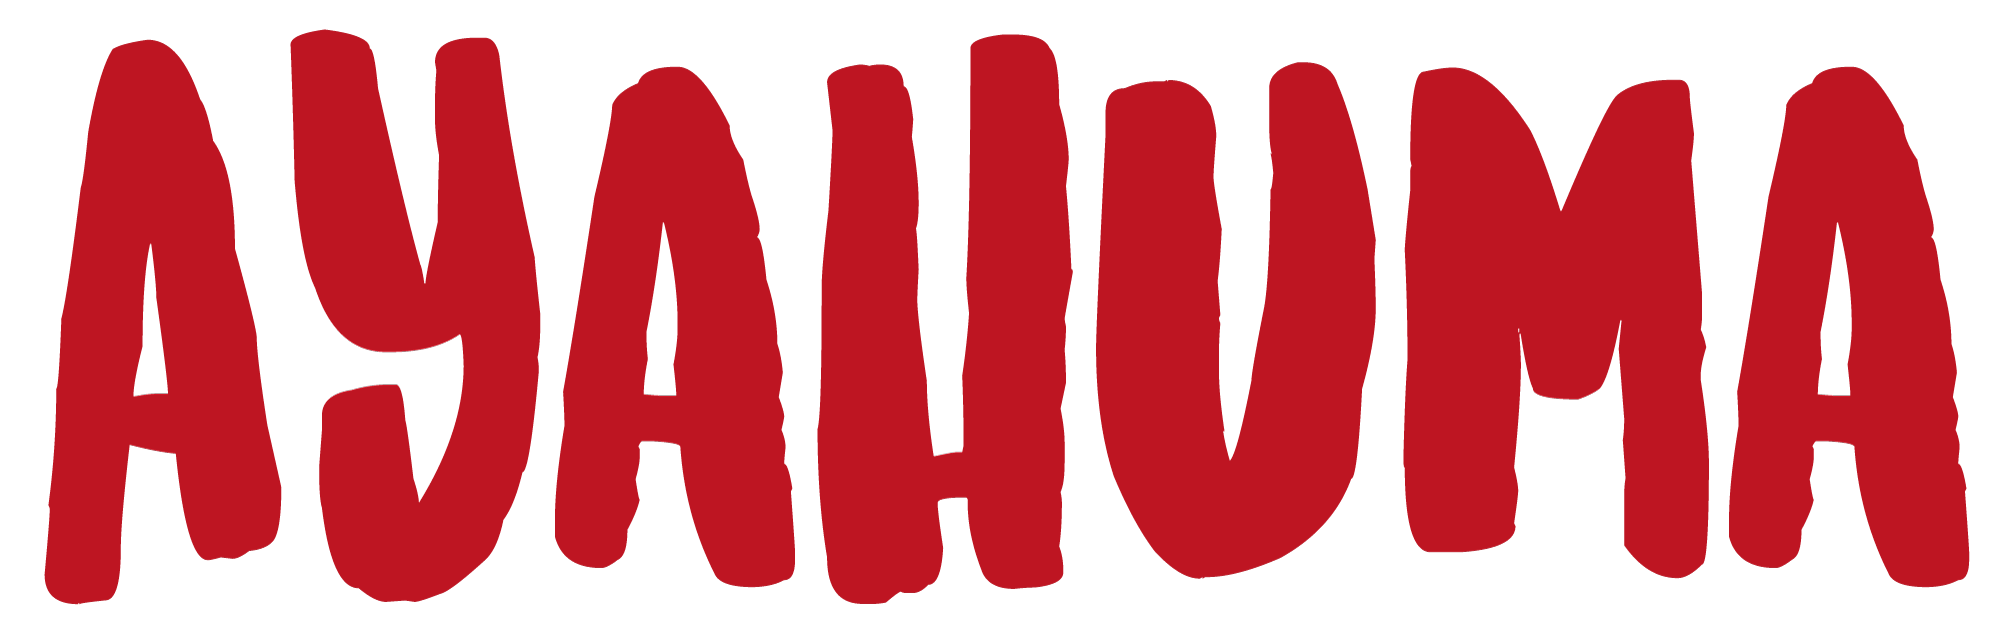 Logo AYAHUMA RESTAURANT